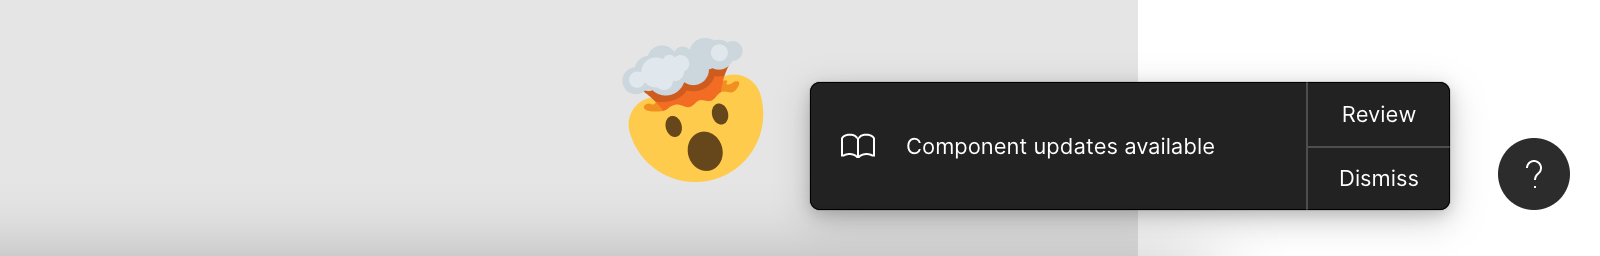 Skjermbilde av oppdateringsdialogen i Figma, med en ðŸ¤¯ emoji-reaksjon